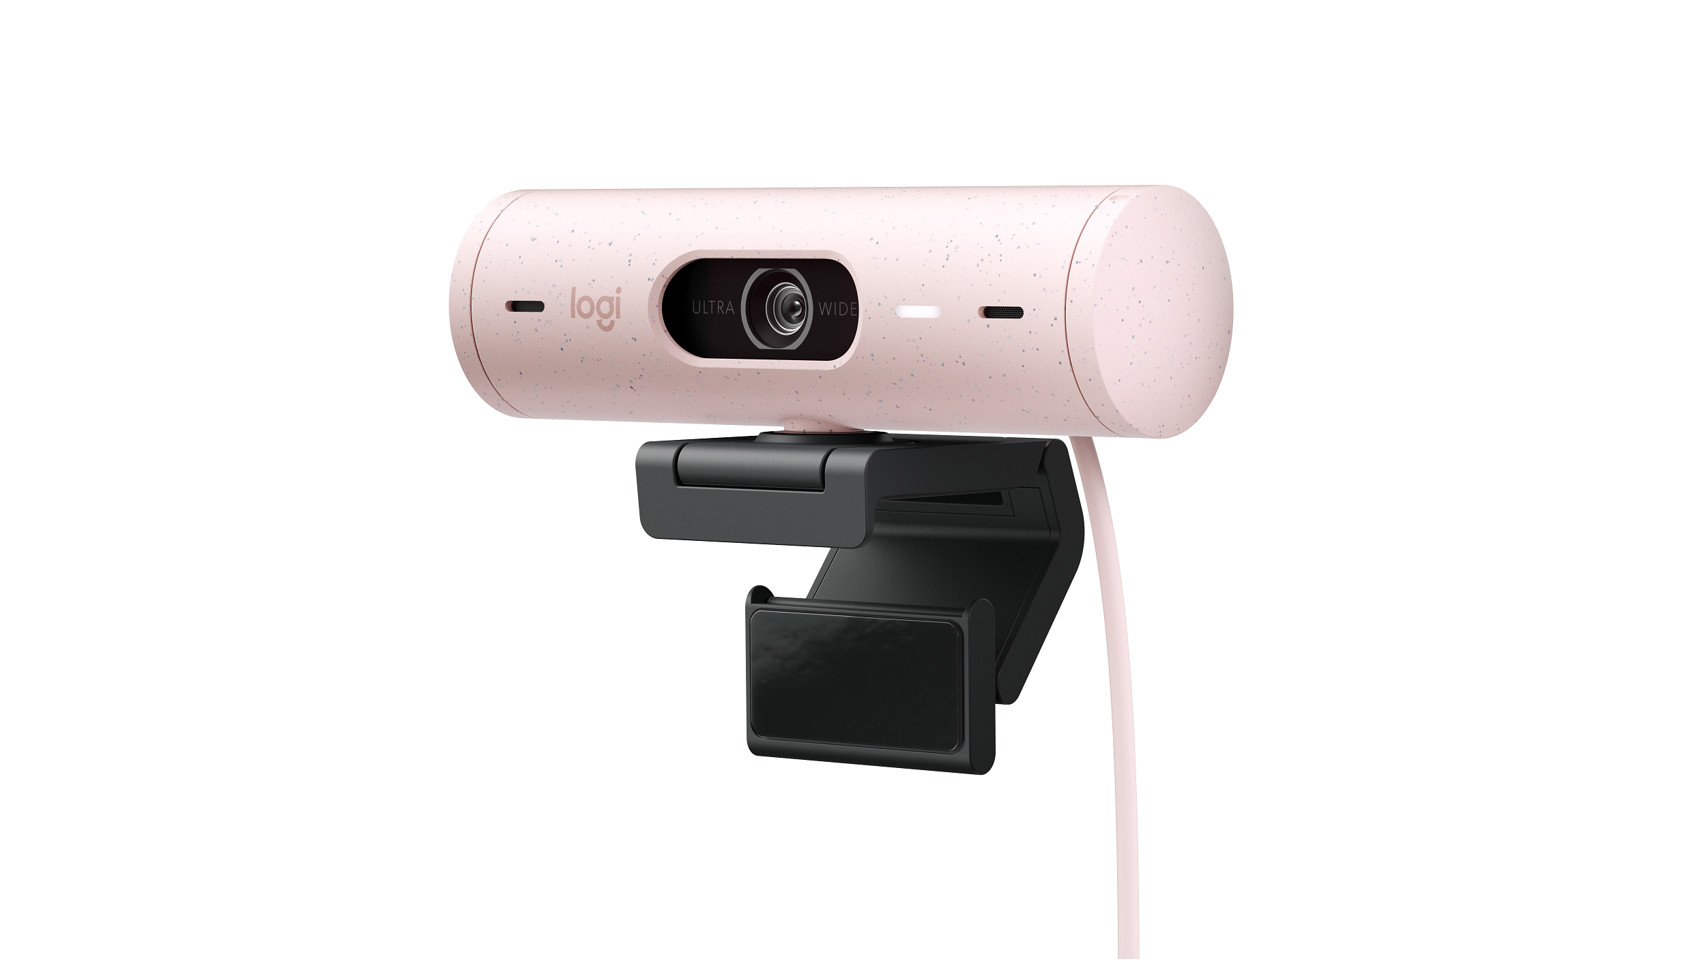 Webbkameran BRIO från Logitech med 4K Ultra HD-video och HDR